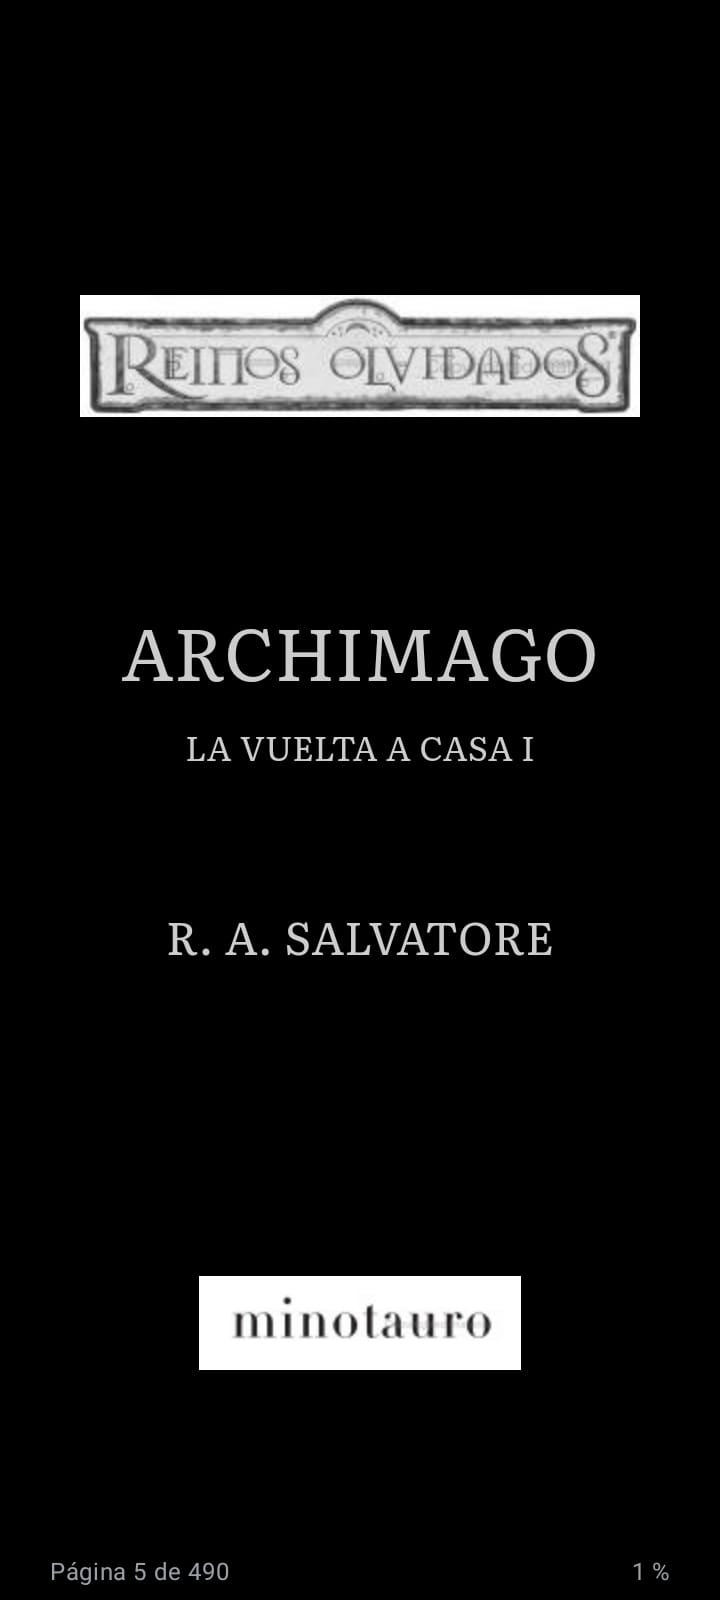 La Vuelta a Casa no 01/03 Archimago